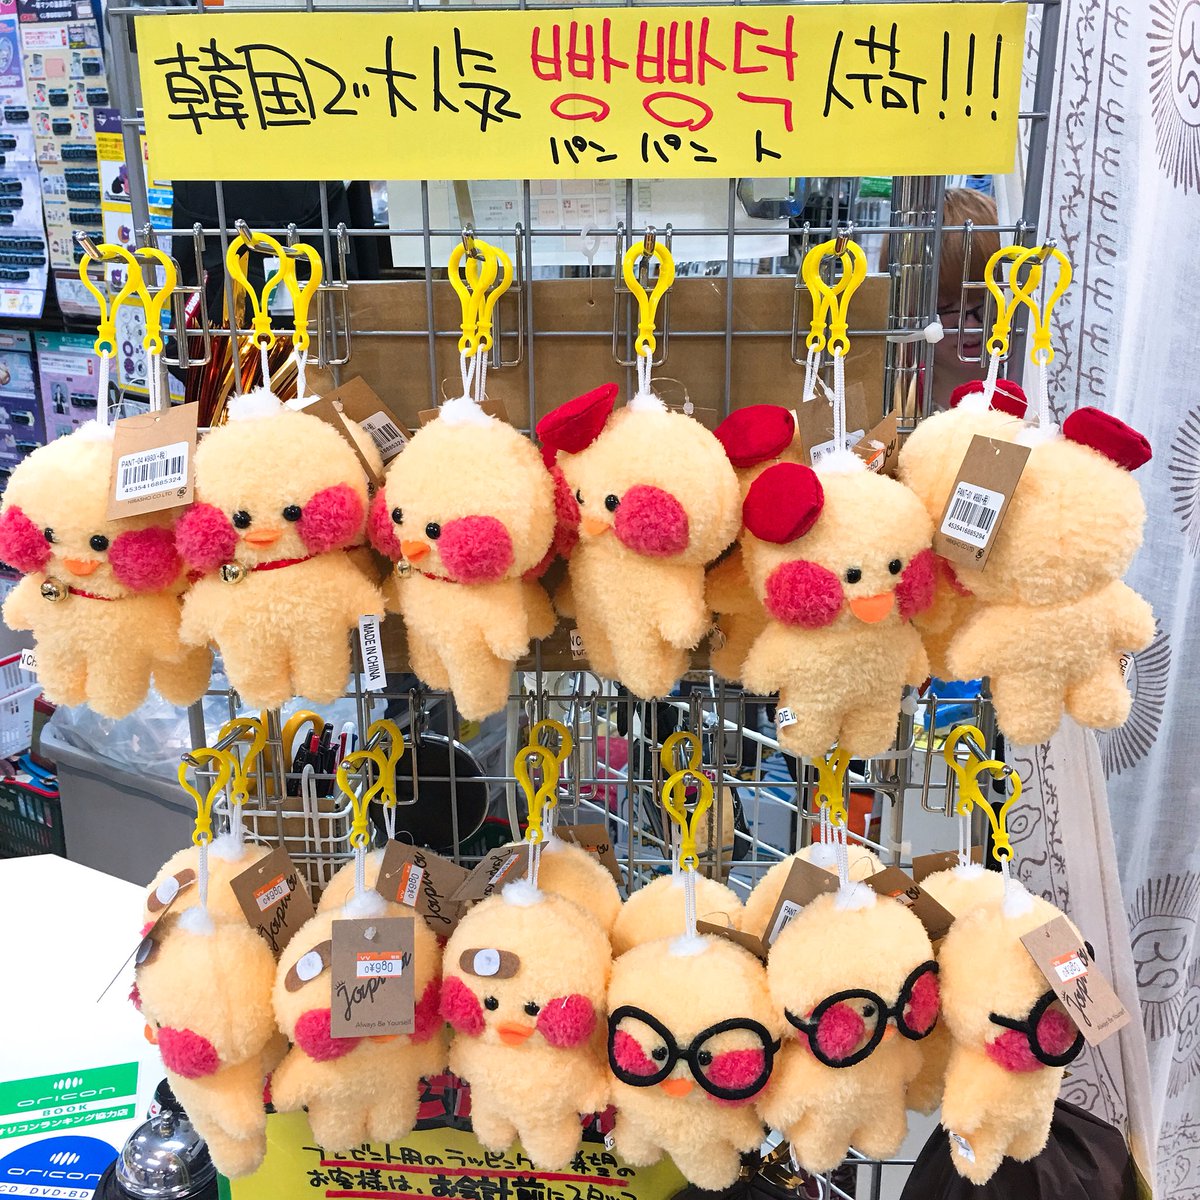 ヴィレッジヴァンガードイオン秋田中央 בטוויטר 韓国で大人気のひよこのキャラクター パンパントちゃんが入荷しましたよー ｕ ᴗ ｕ かっわいい